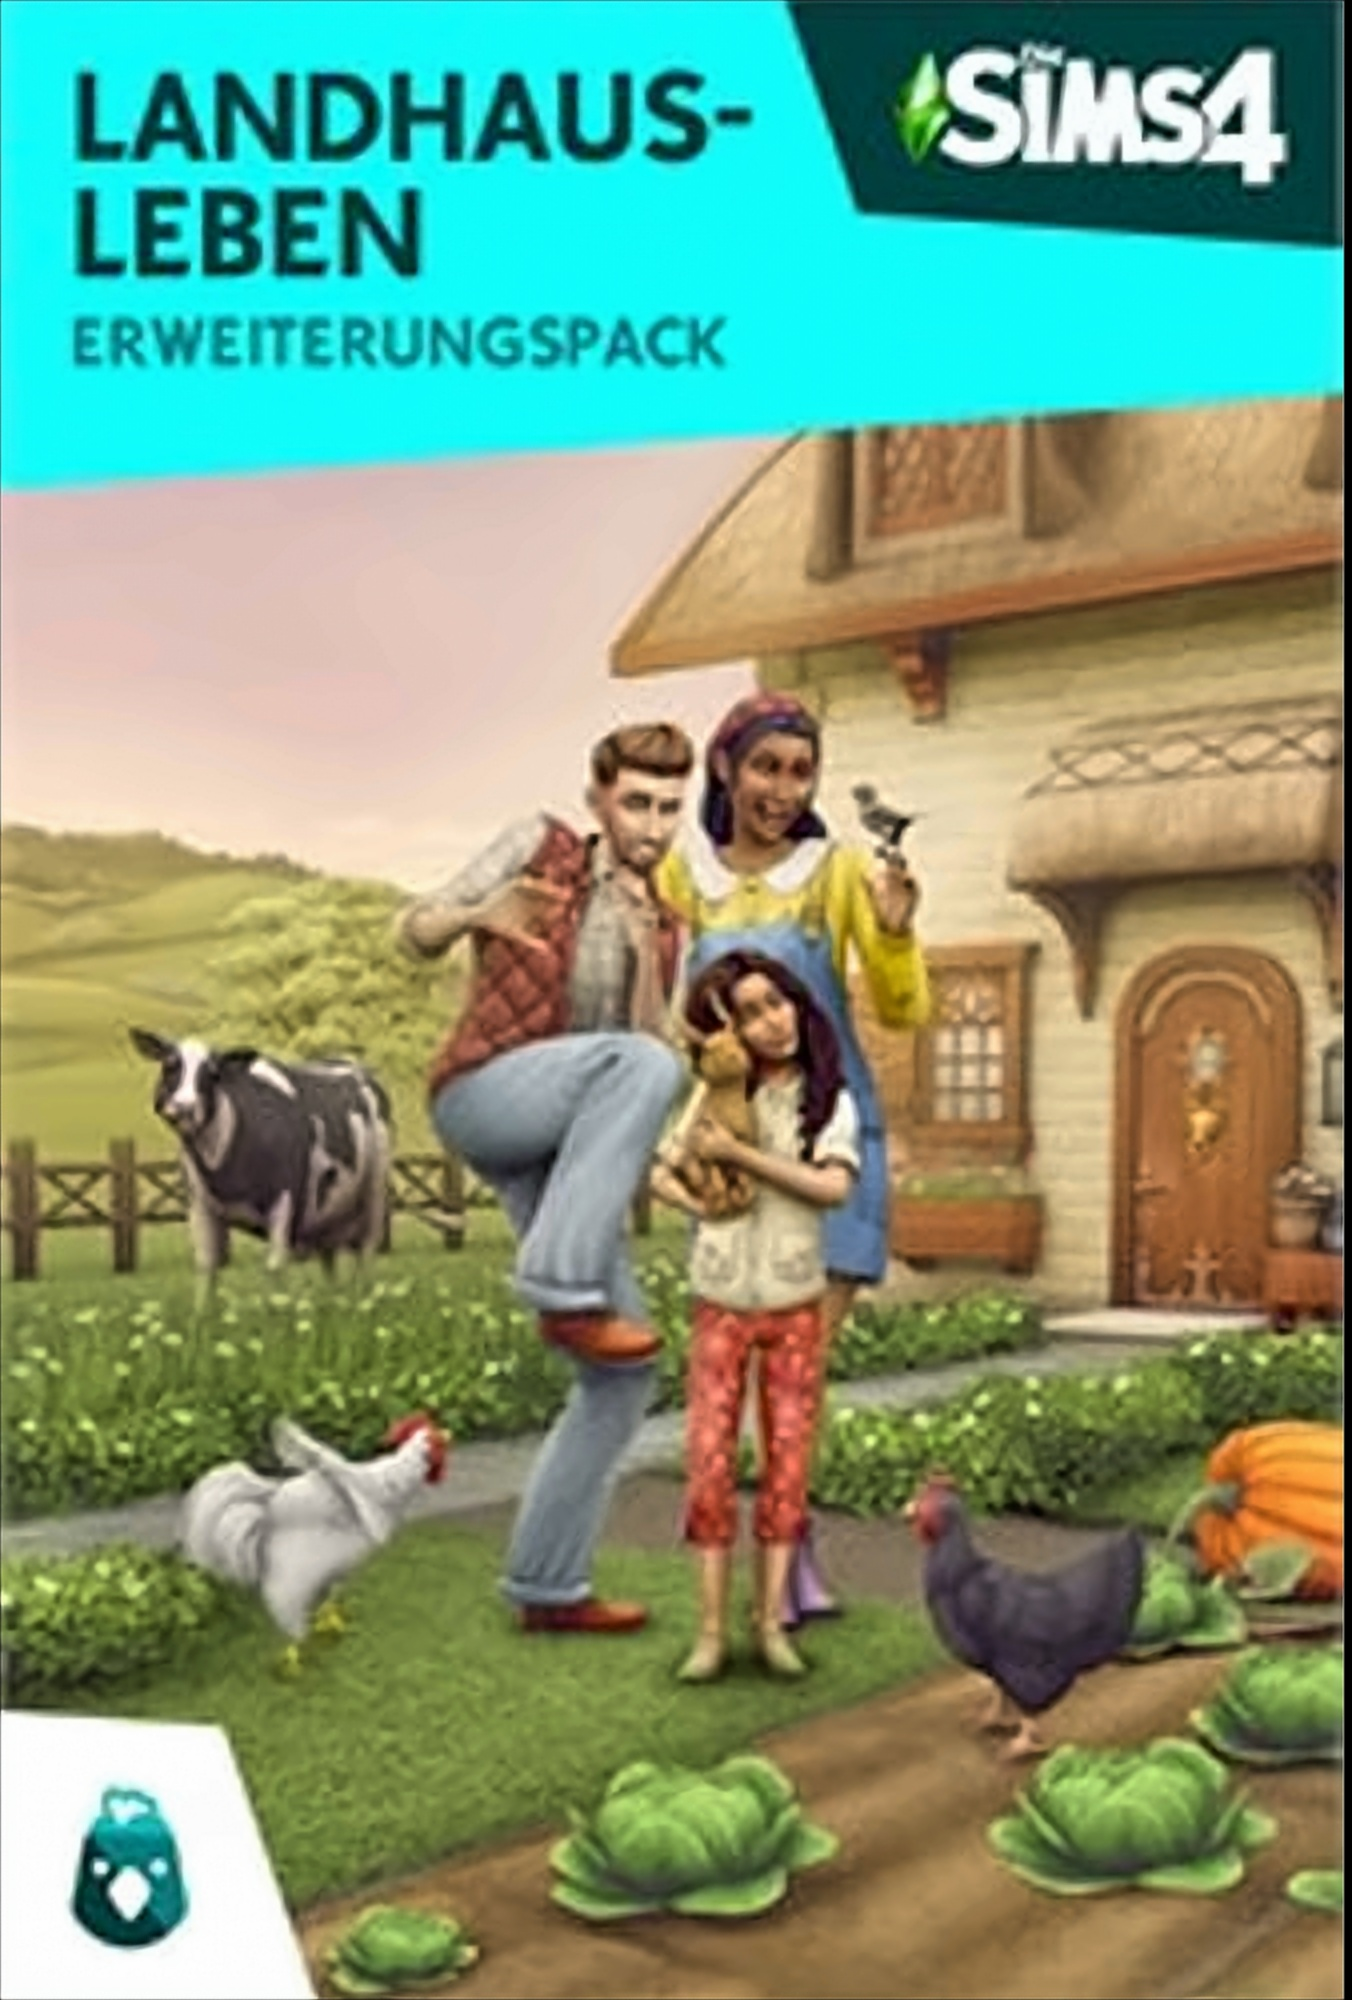 Sims 4 PC Addon [PC] - Landhausleben EP11